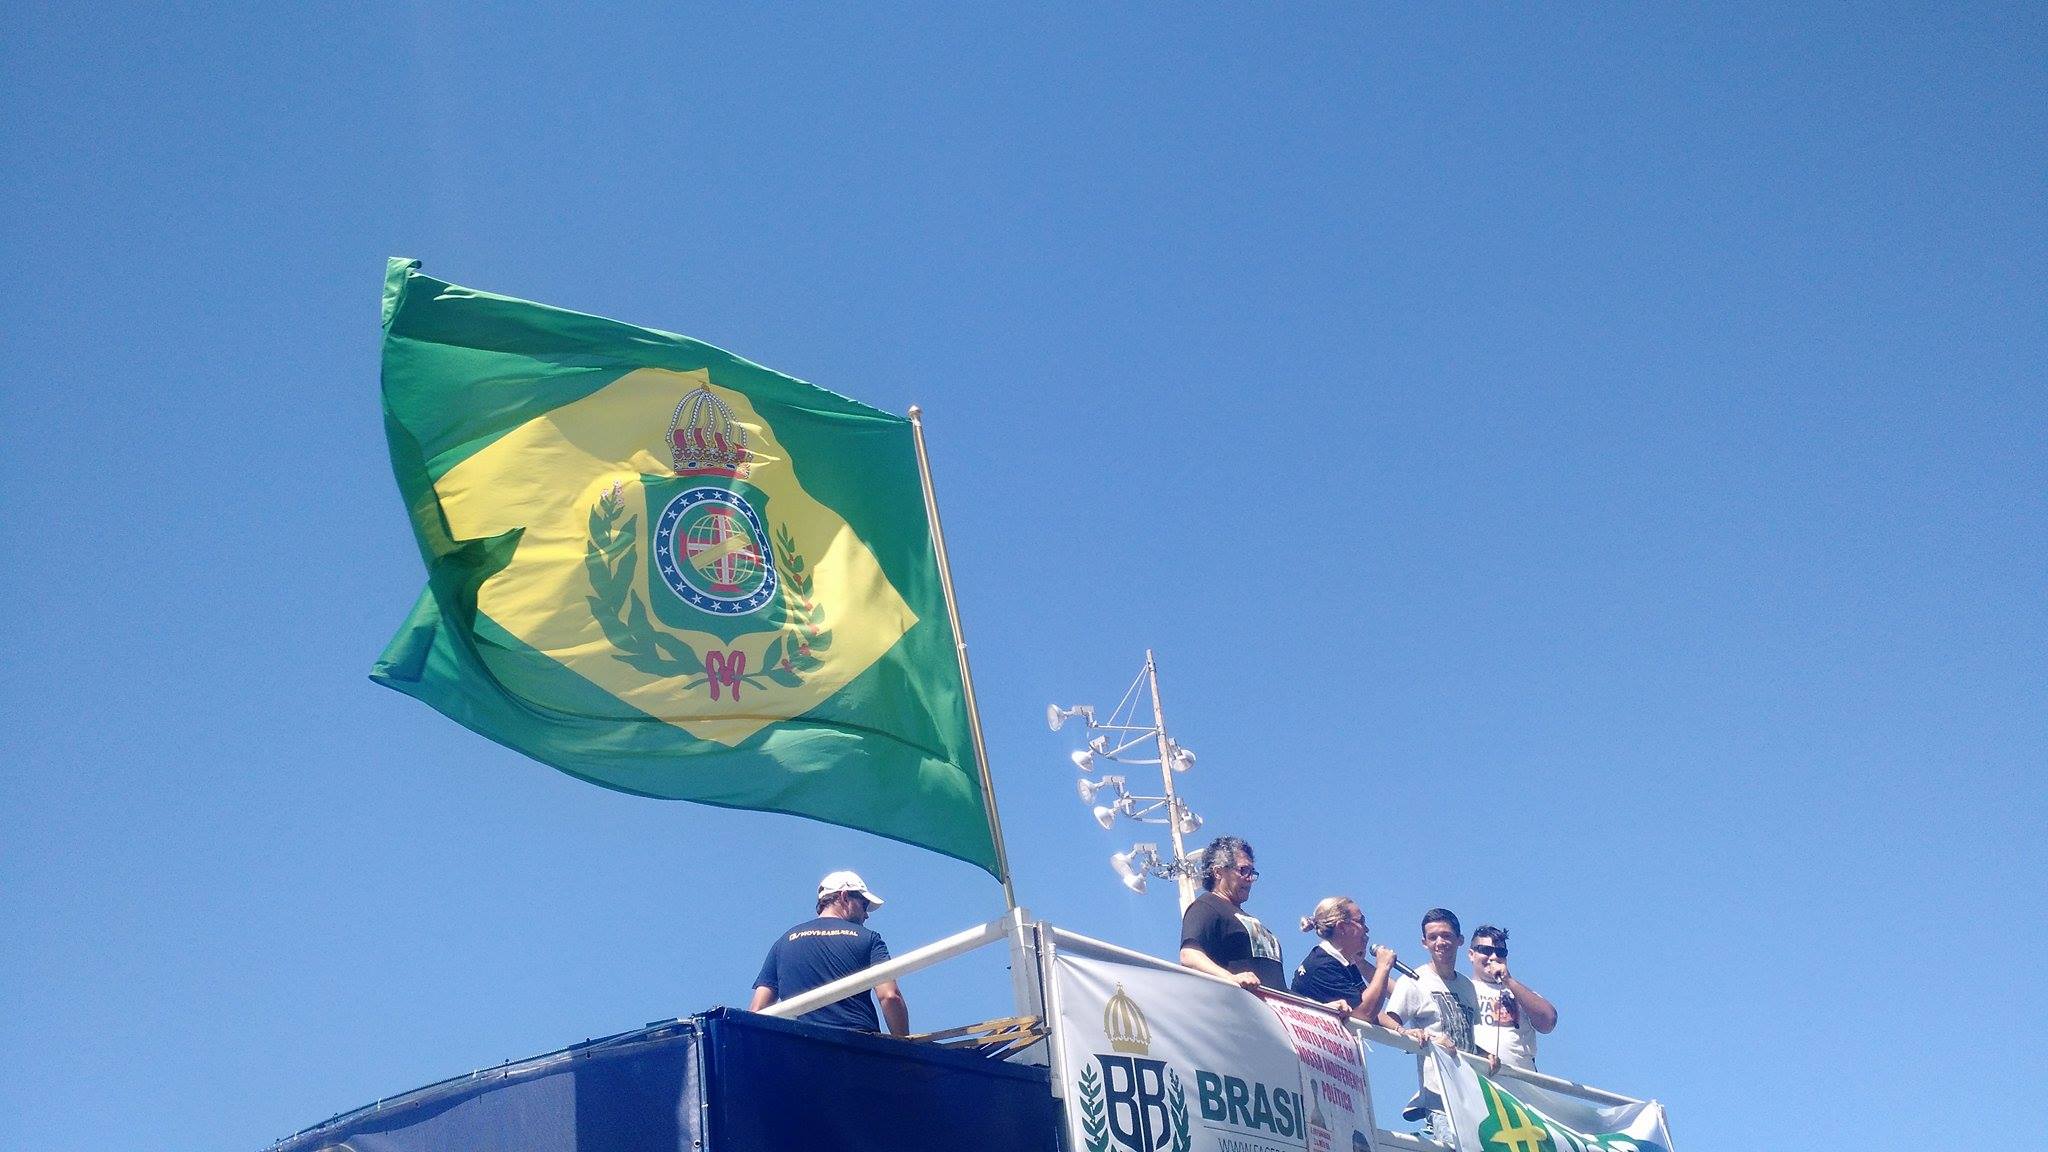 Bandeira do Império no carro do Brasil Real (Foto tirada pelo Boletim da Liberdade)